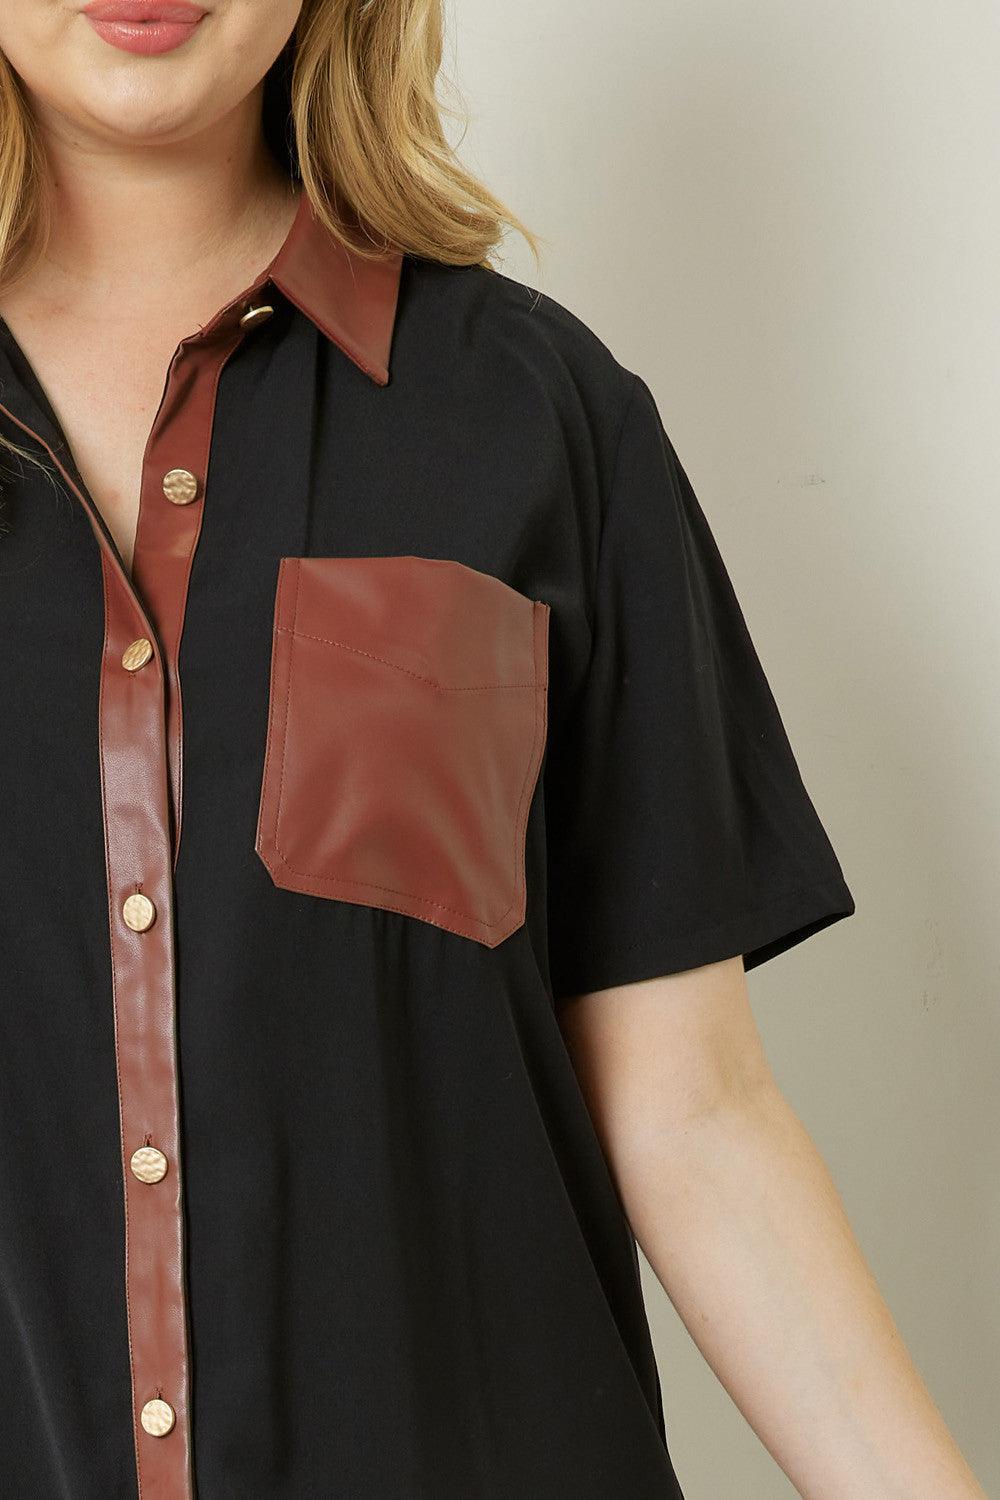 PLUS faux leather trim & pocket button down dress - RK Collections Boutique